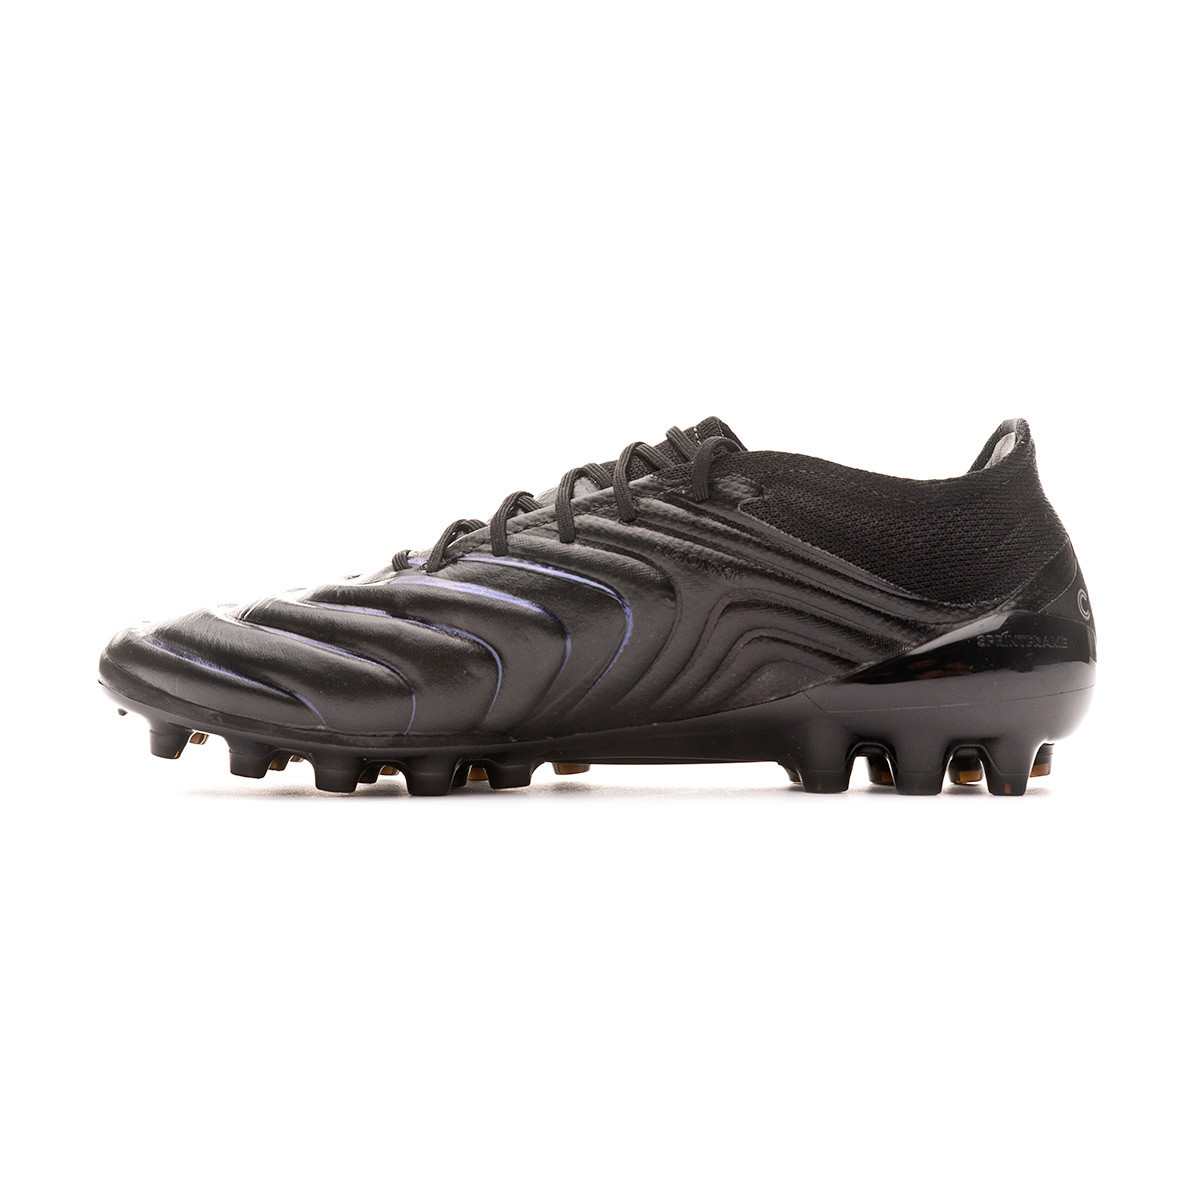 Bota de fútbol adidas Copa 19.1 AG Core black-Silver metallic - Tienda de  fútbol Fútbol Emotion